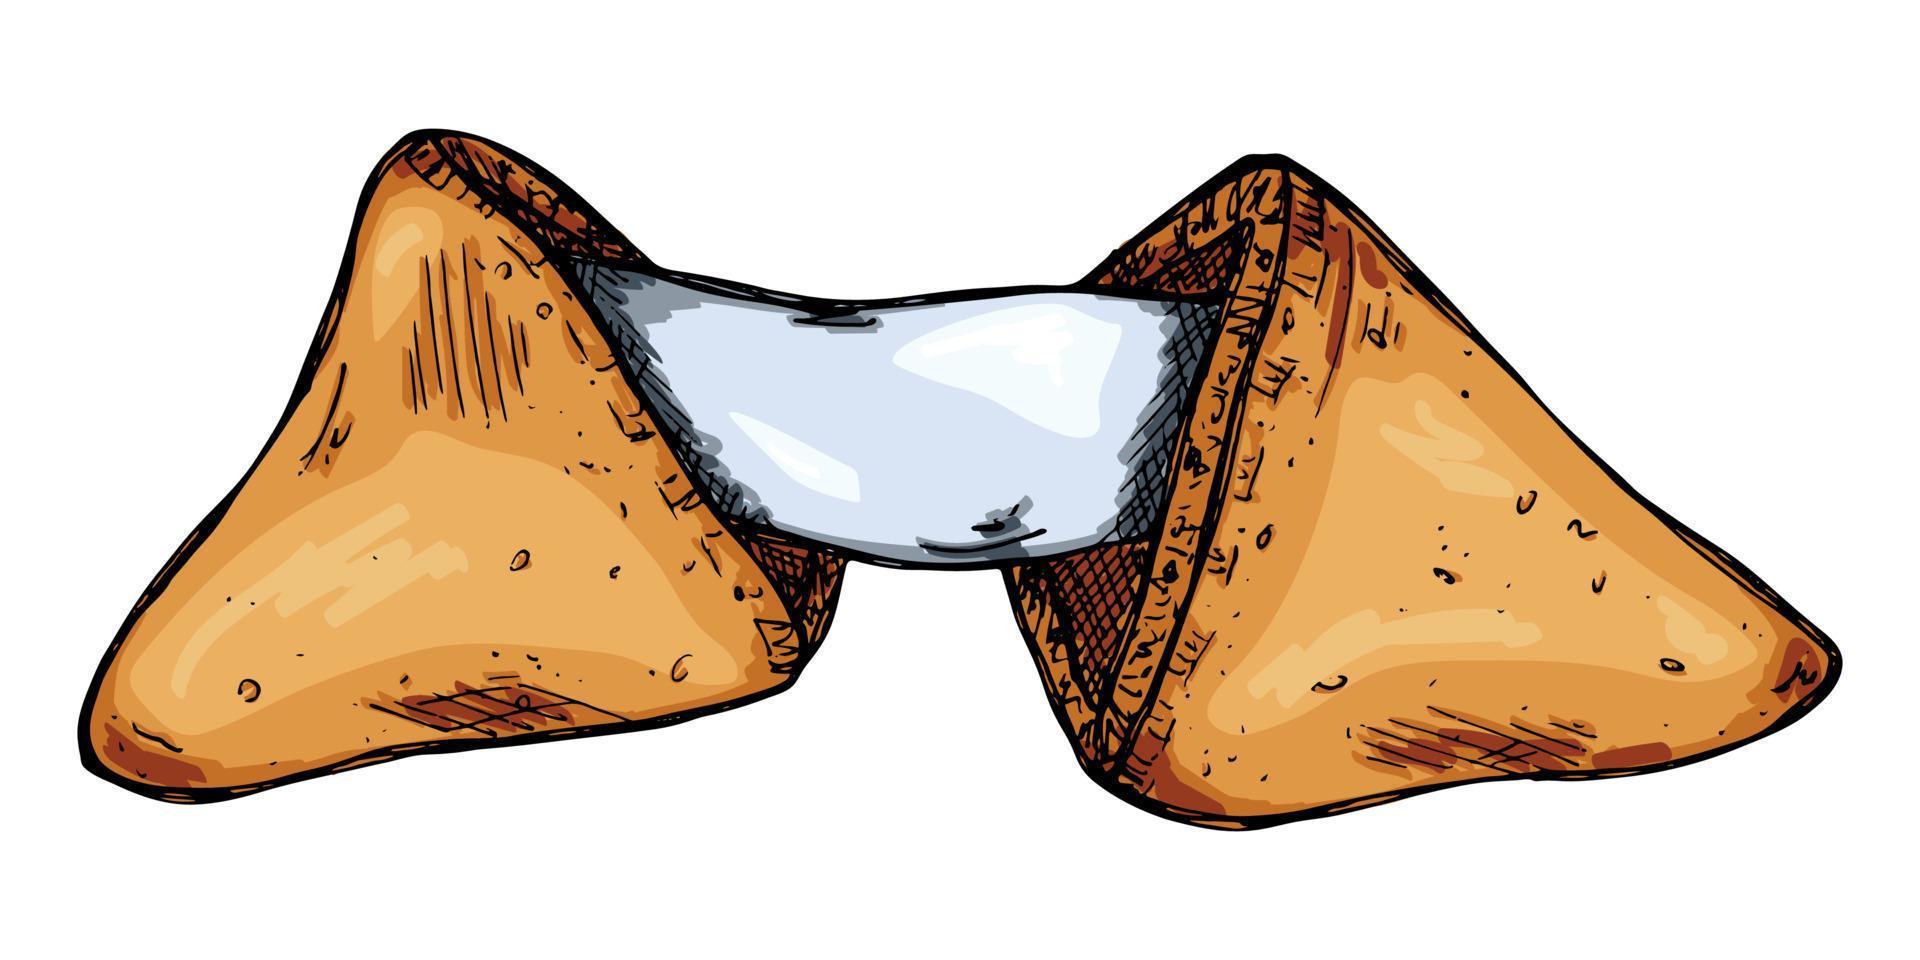 biscuits de fortune chinois dessinés à la main de vecteur isolés sur fond blanc. illustration de la nourriture. biscuit croustillant avec une feuille de papier vierge à l'intérieur.